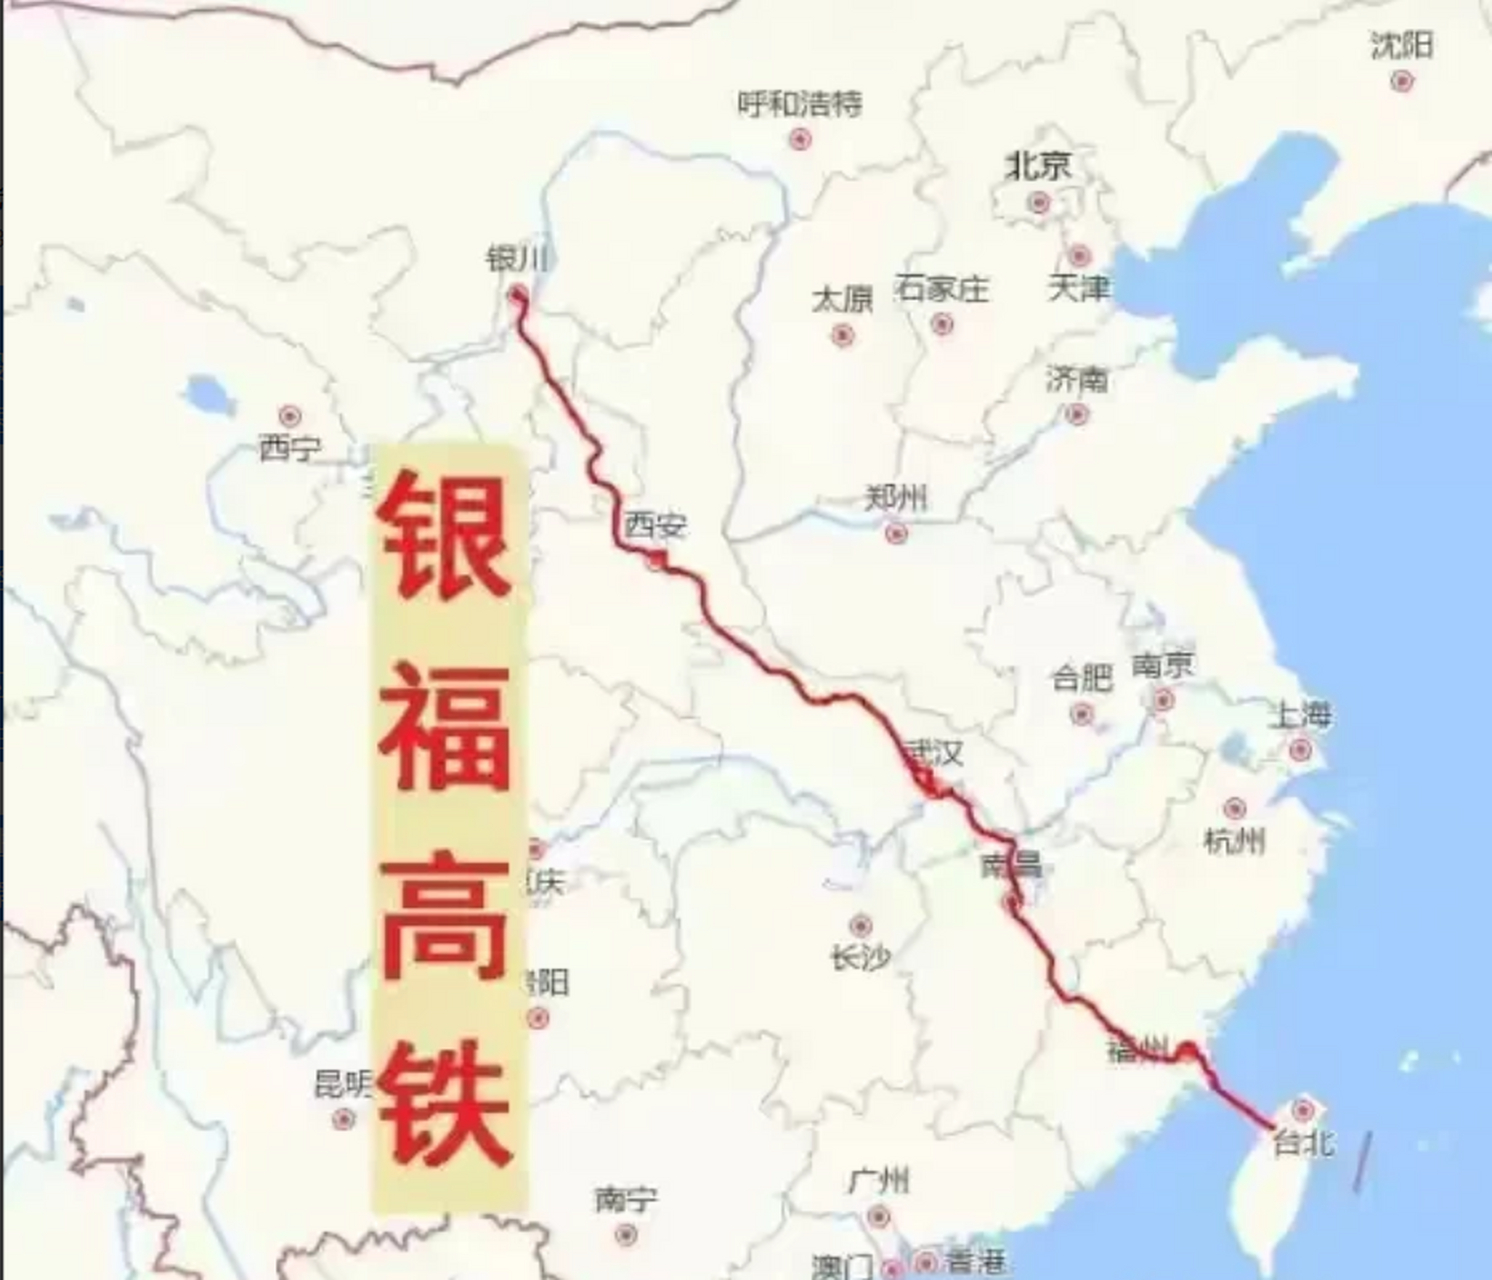 银福高铁,全称银川至福州高速铁路,是中国目前规划的五大干线高铁之一